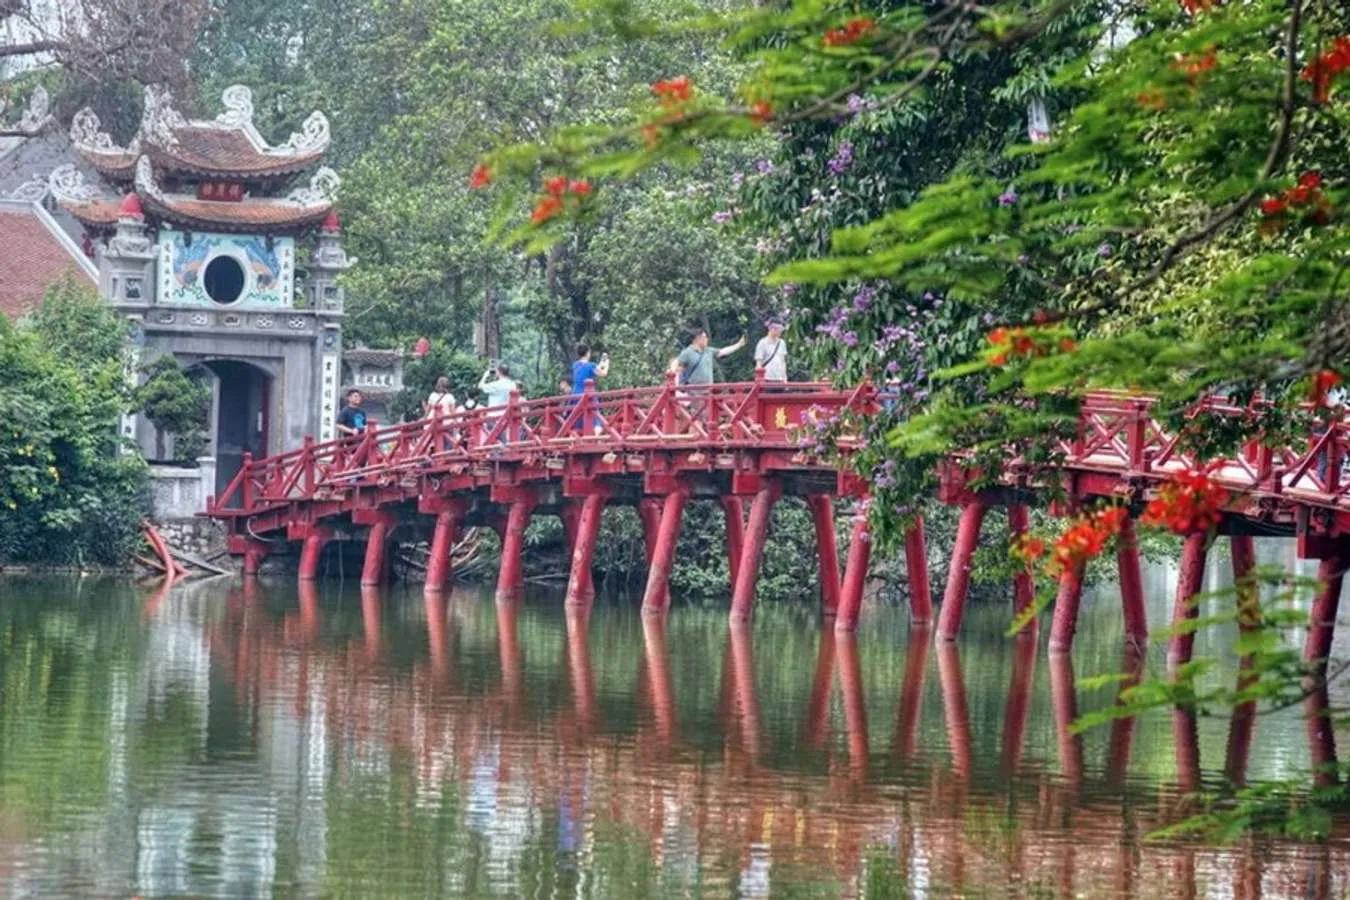 Đền Ngọc Sơn, Hồ Hoàn Kiếm - Địa điểm tham quan nổi tiếng của thủ đô Hà Nội